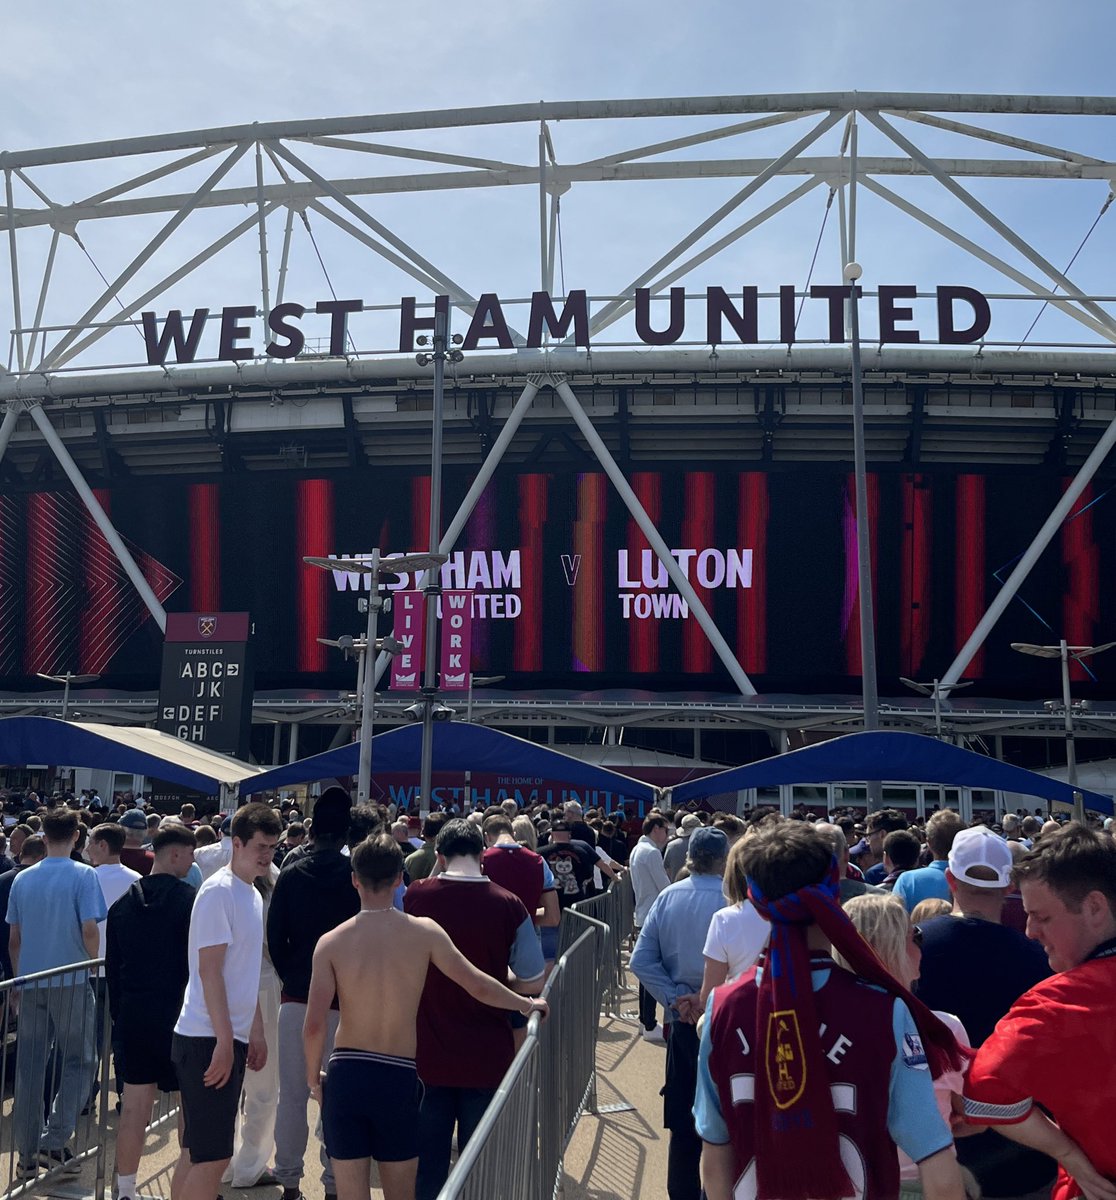 West Ham United - Luton maçı için London Stadium’dayız ⚽️Luton’un ligde kalmak için kazanmaktan başka çaresi yok. 

Nadir rastlanan bu güneşli Londra gününde, umarız bol gollü ve keyifli bir maç olur ☀️